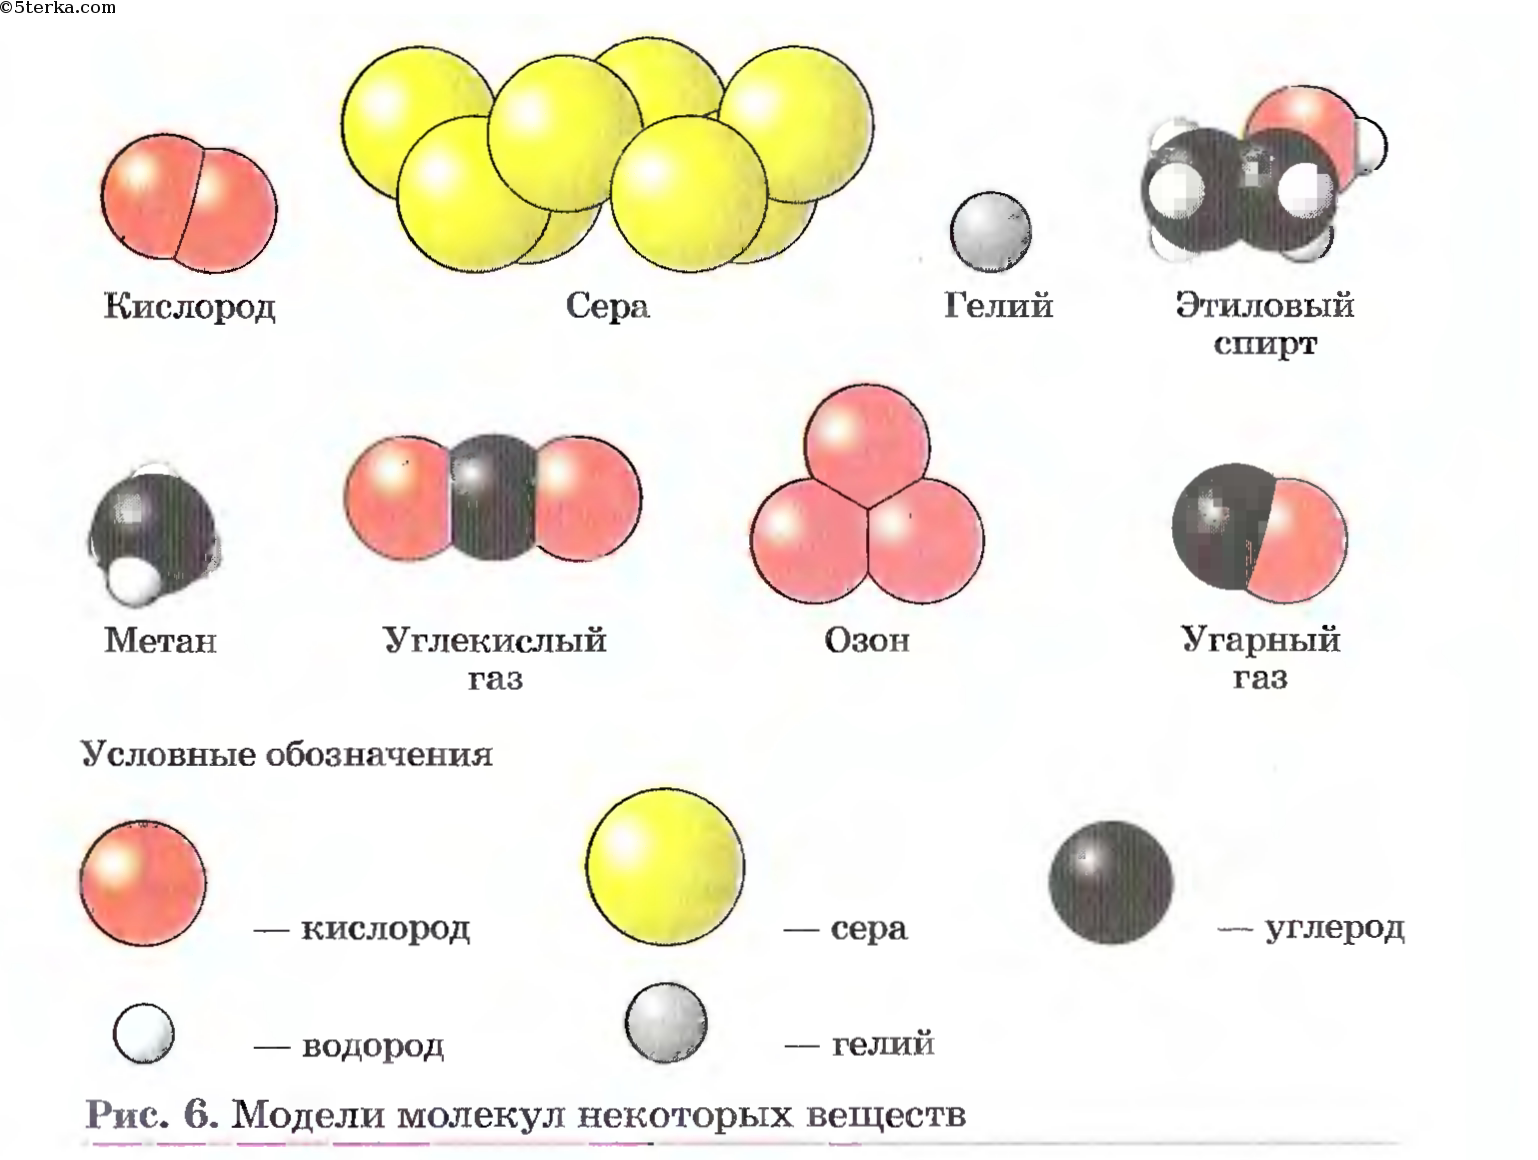 Назовите структуру белковой молекулы изображенную на рисунке какие взаимодействия и химические связи